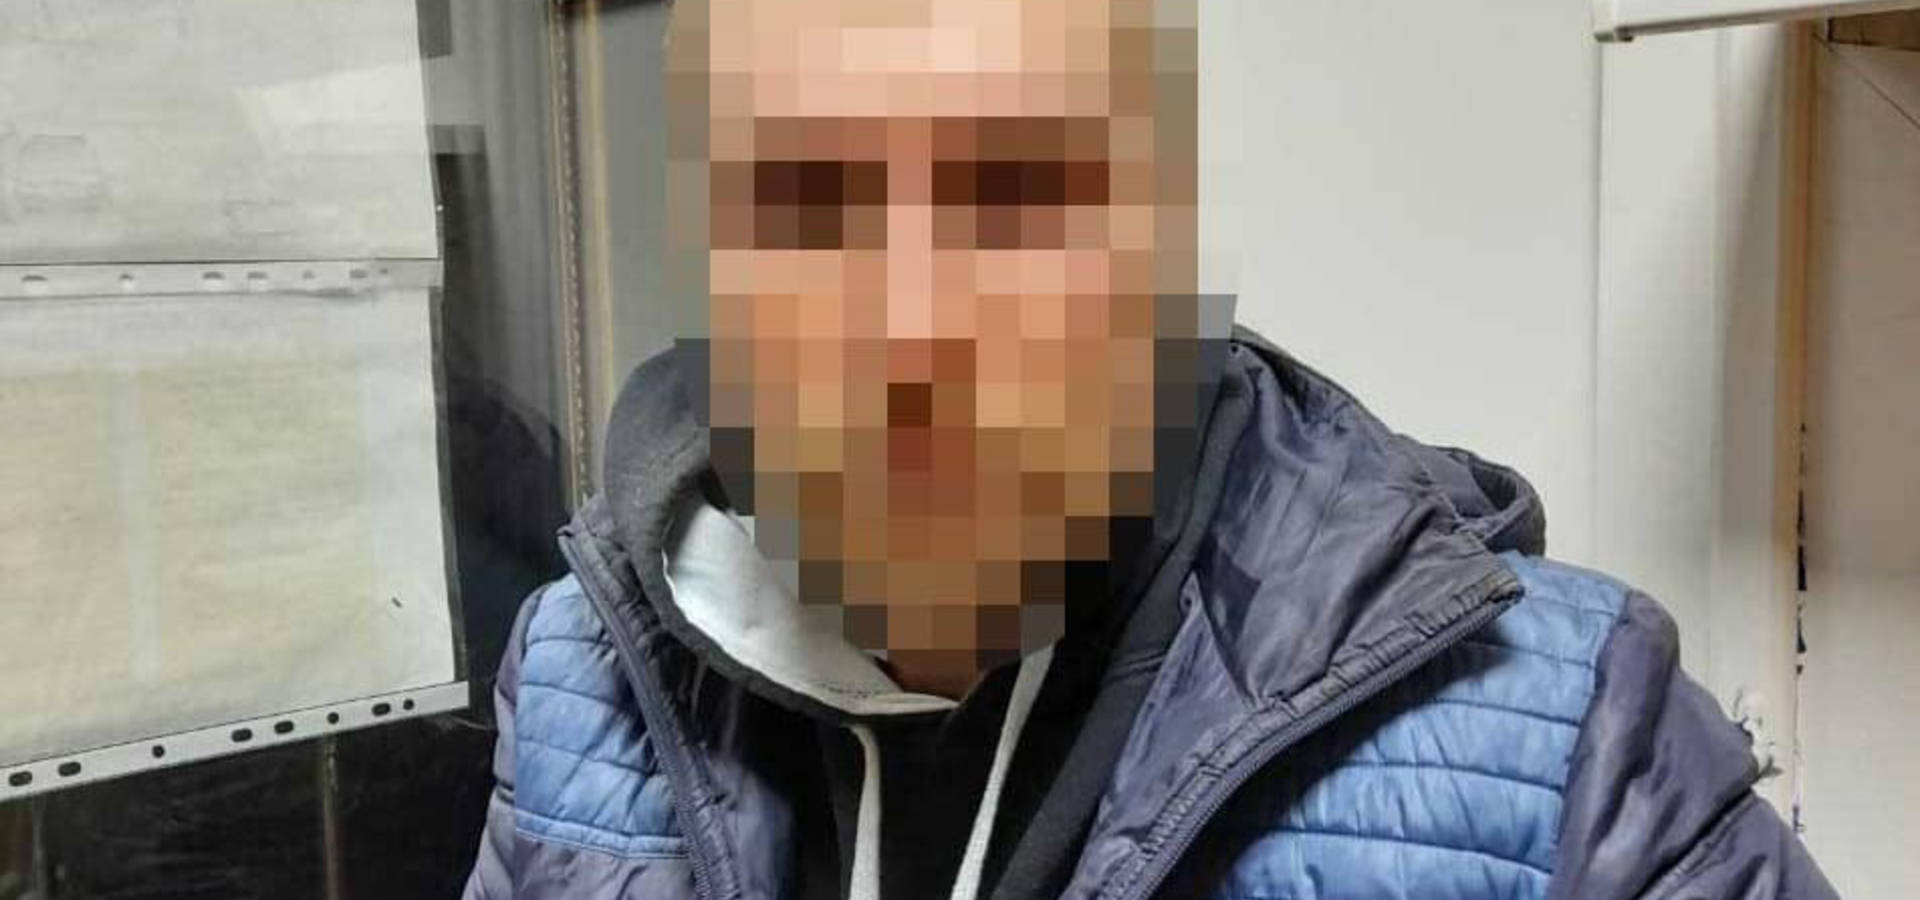 На Вінниччині за крадіжку пляшки алкоголю чоловік отримав 8 років ув'язнення (відео)